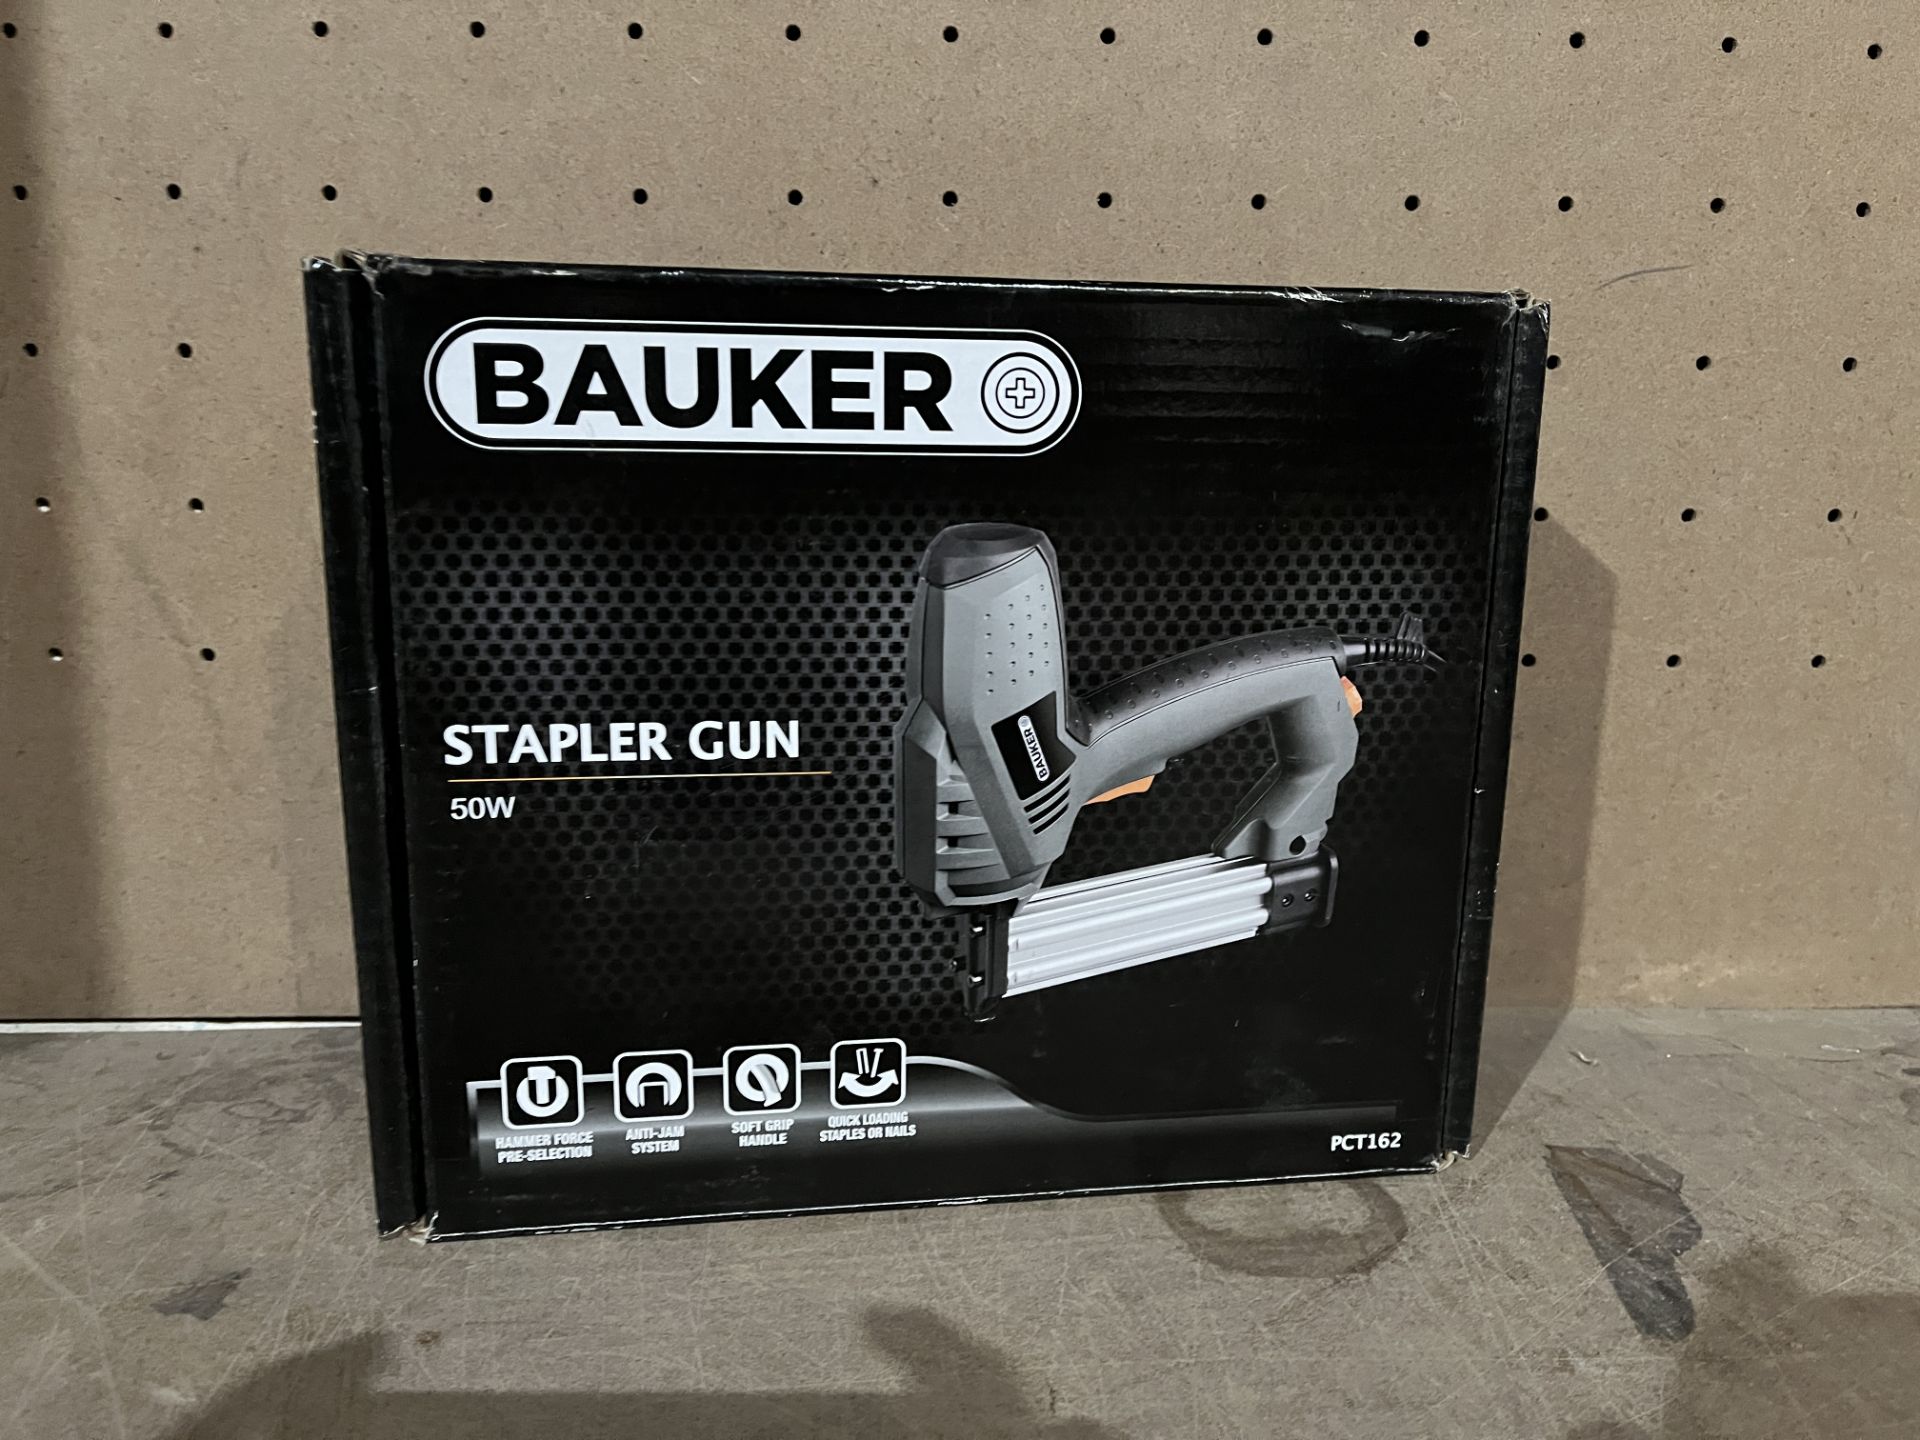 3 X BAUKER STAPLER GUNS (UNCHECKED, UNTESTED) PCK2